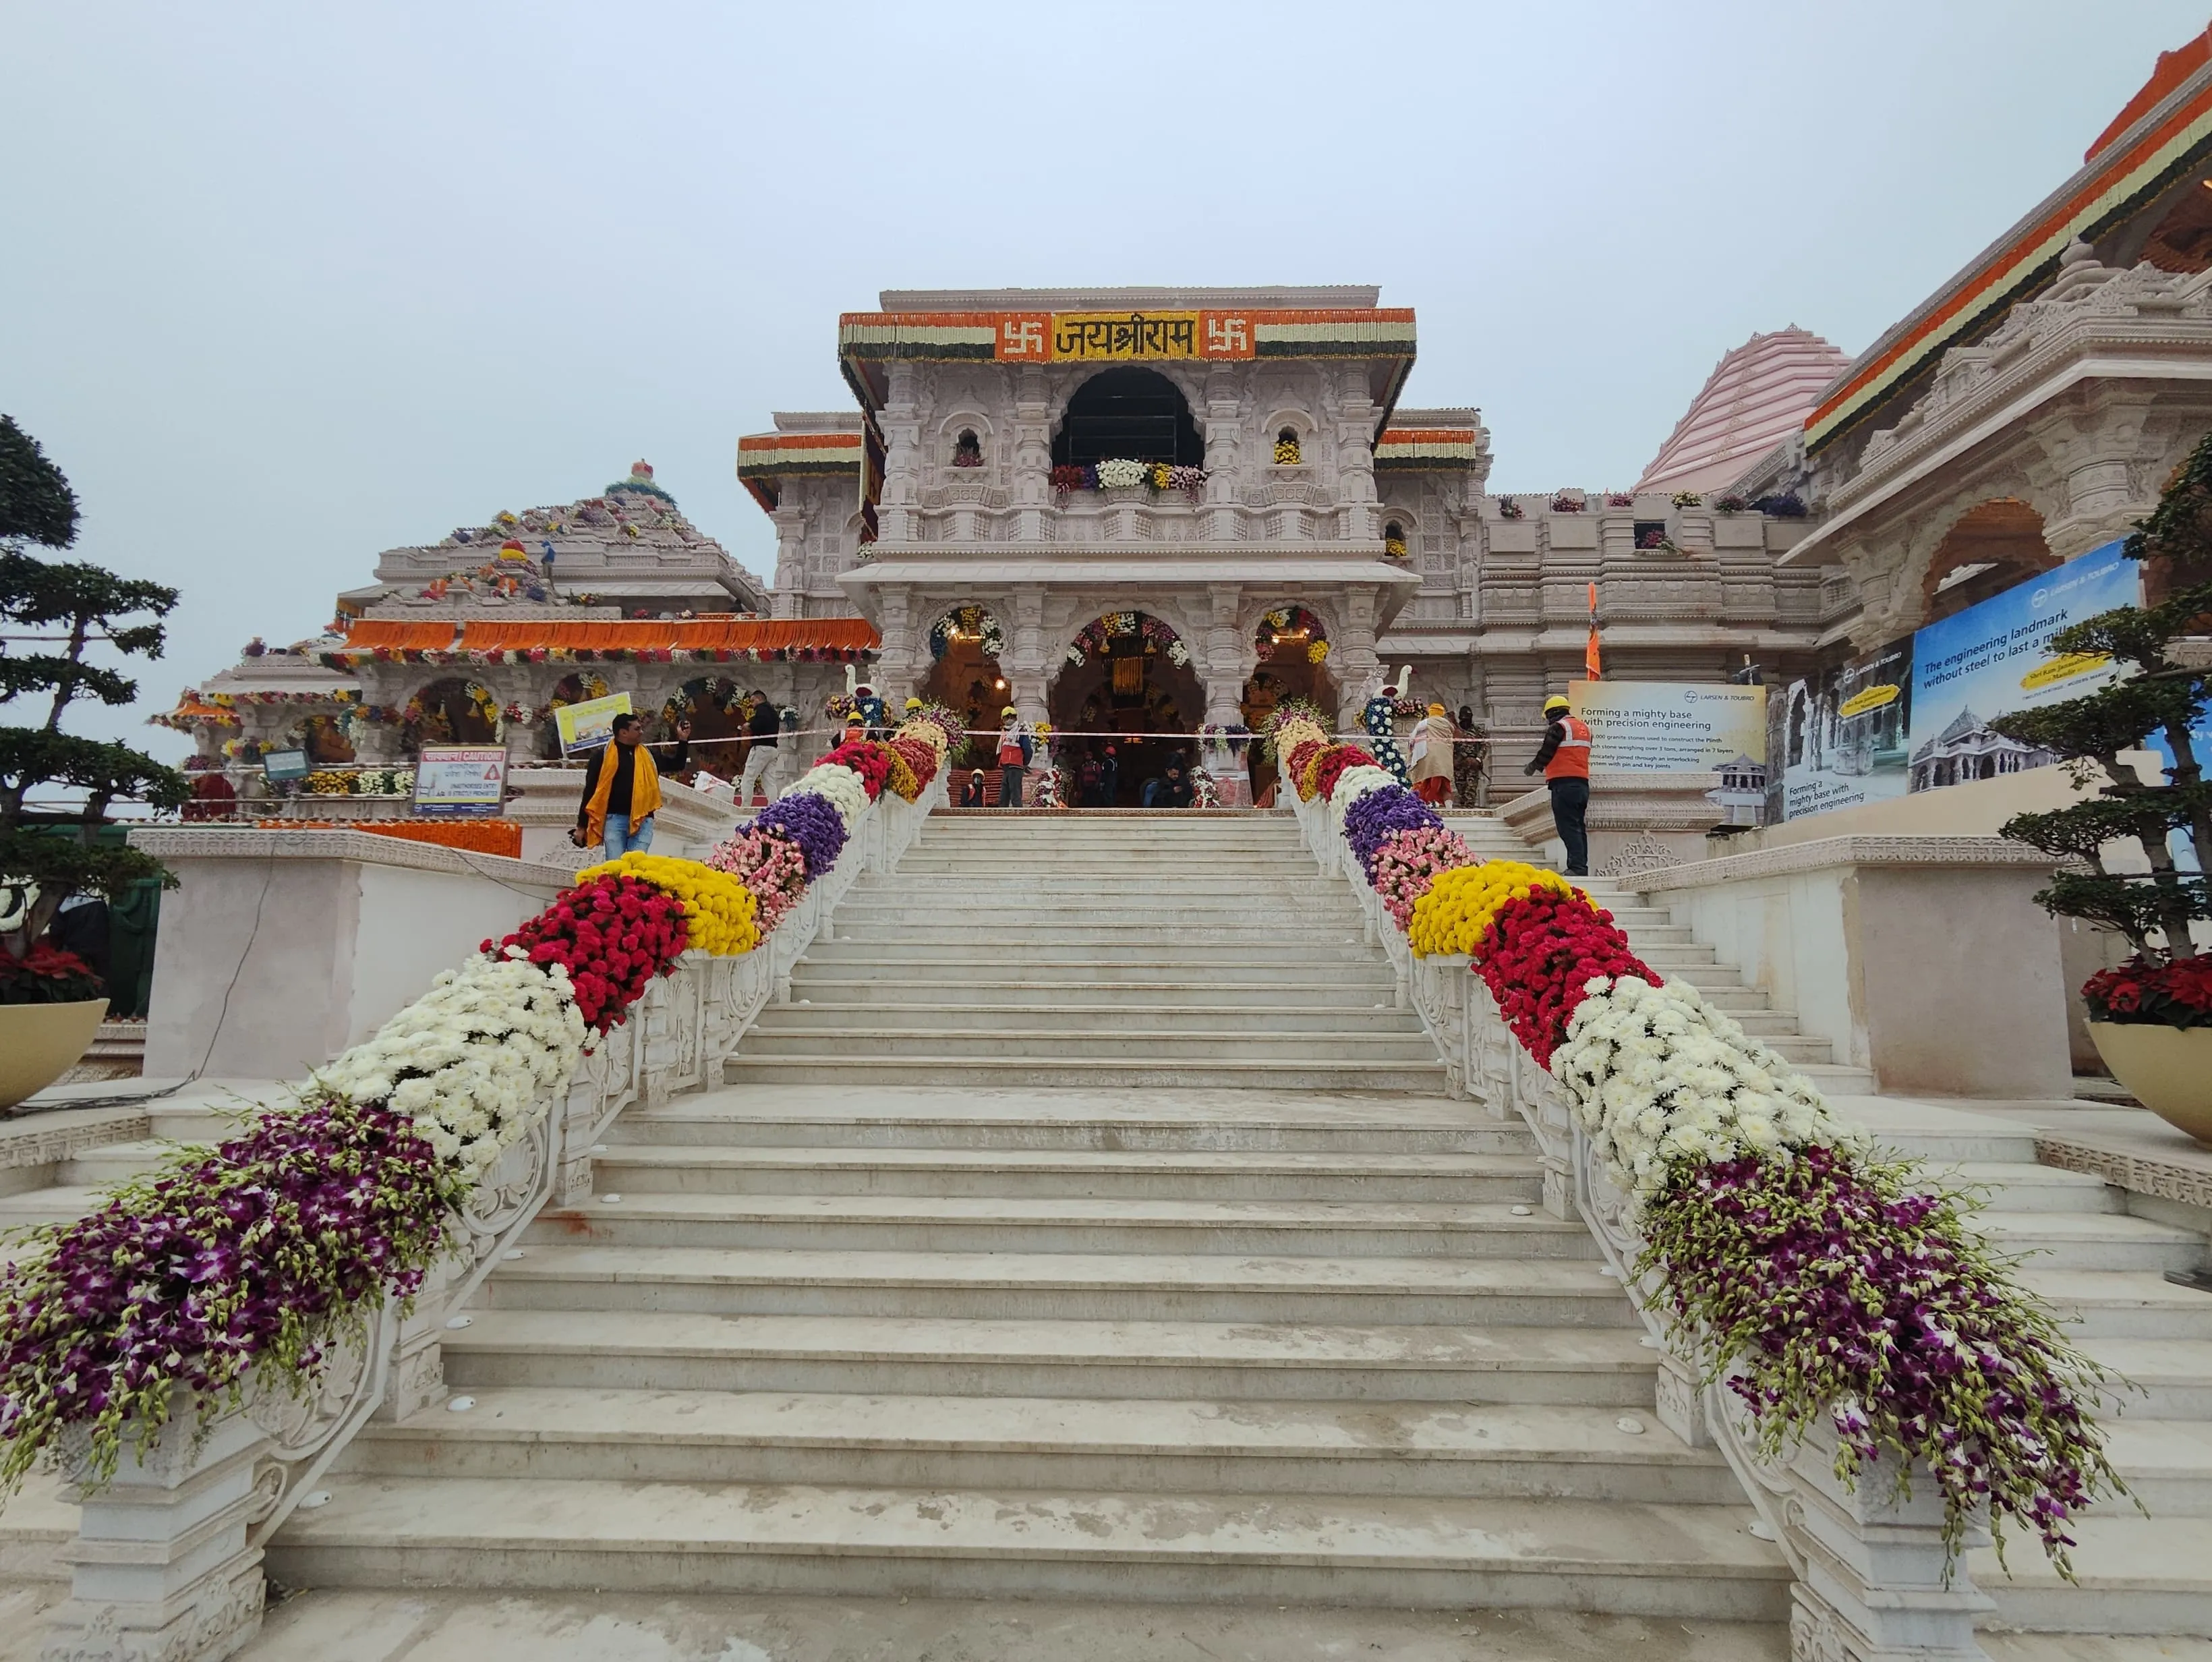 अद्भुत, अलौकिक, मनमोहक... प्राण प्रतिष्ठा के लिए सज गई अवधनगरी, देखिए राम  मंदिर की भव्यता की तस्वीरें - Ayodhya Nagari decorated for the Ram Lalla  consecration Ceremony see ...